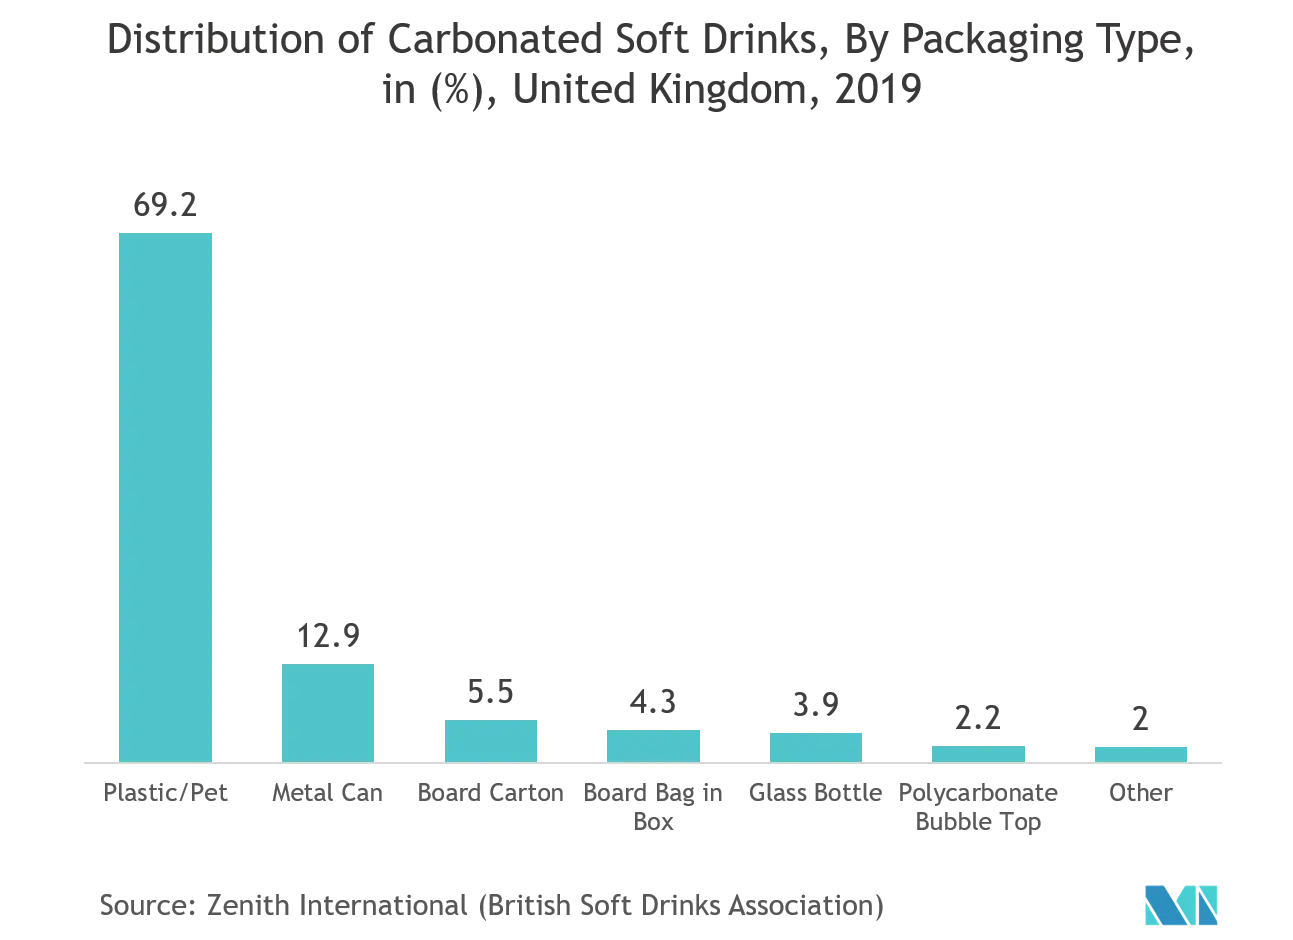 Mercado europeo de pruebas de envases distribución de refrescos carbonatados, por tipo de envase, en (%), Reino Unido, 2019